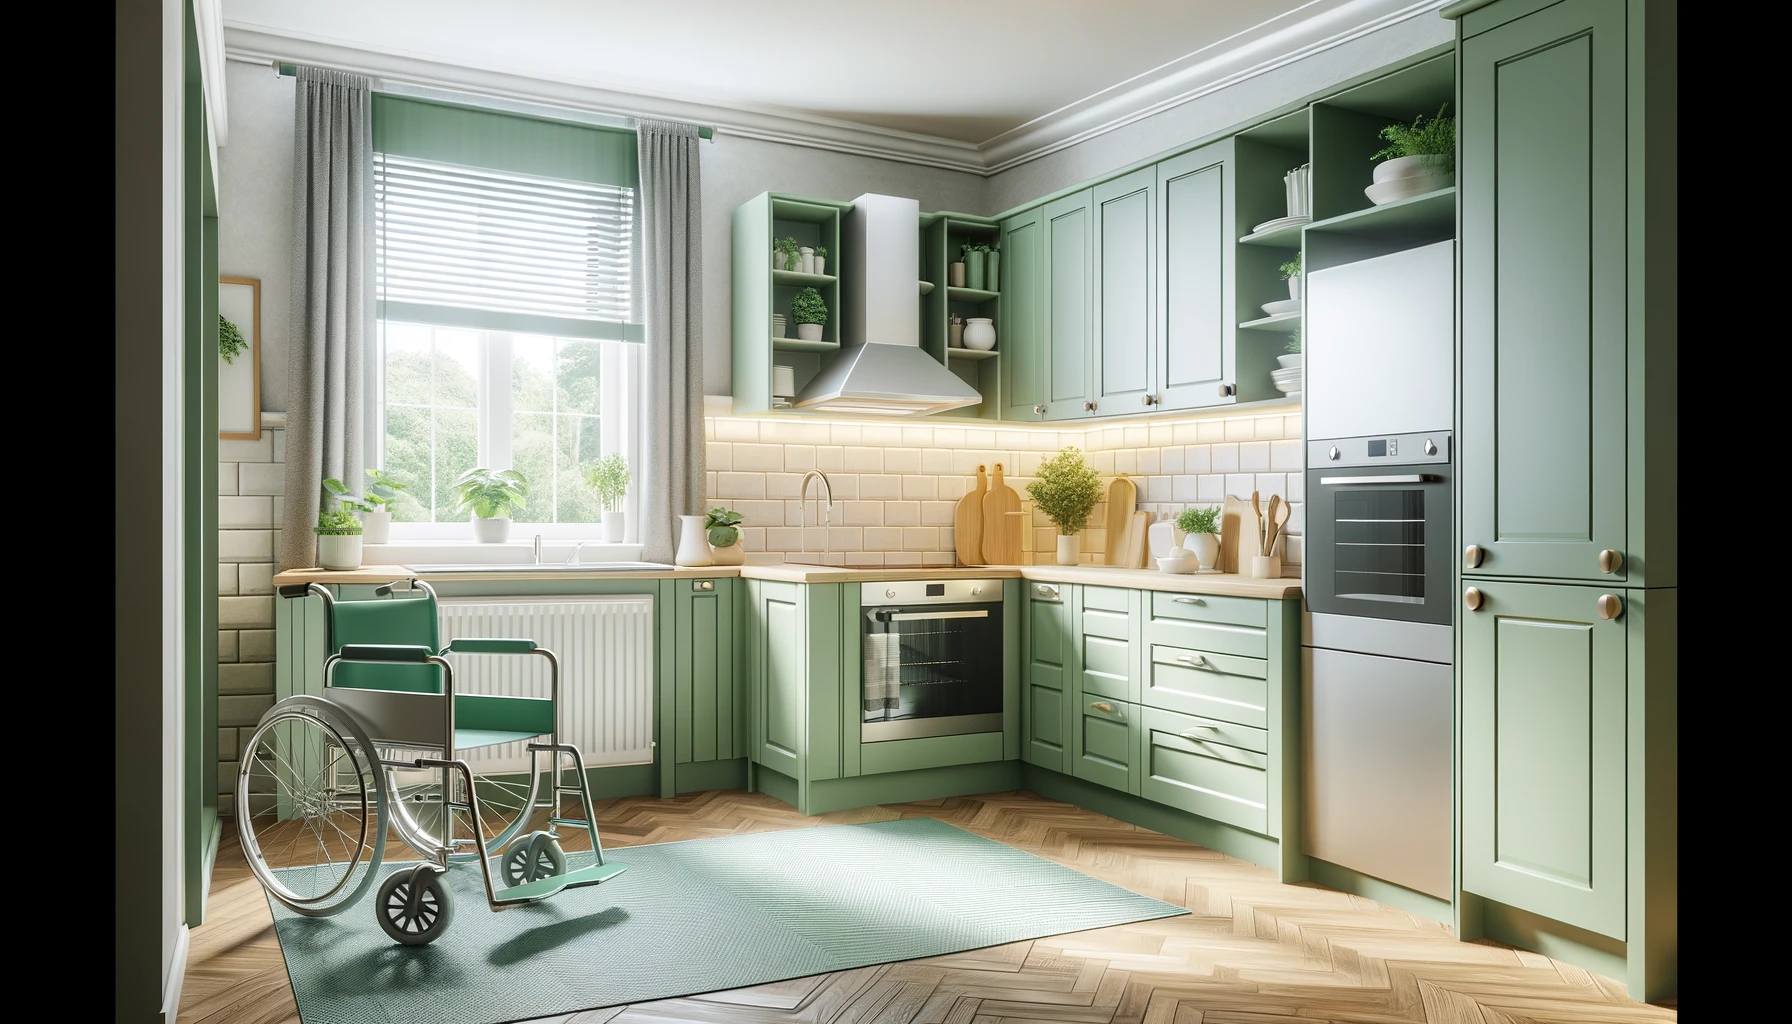 Cozinha moderna com armários verdes, eletrodomésticos em aço inox e cadeira de rodas posicionada sobre tapete próximo à entrada. a luz do dia ilumina a sala através de janelas com persianas brancas.